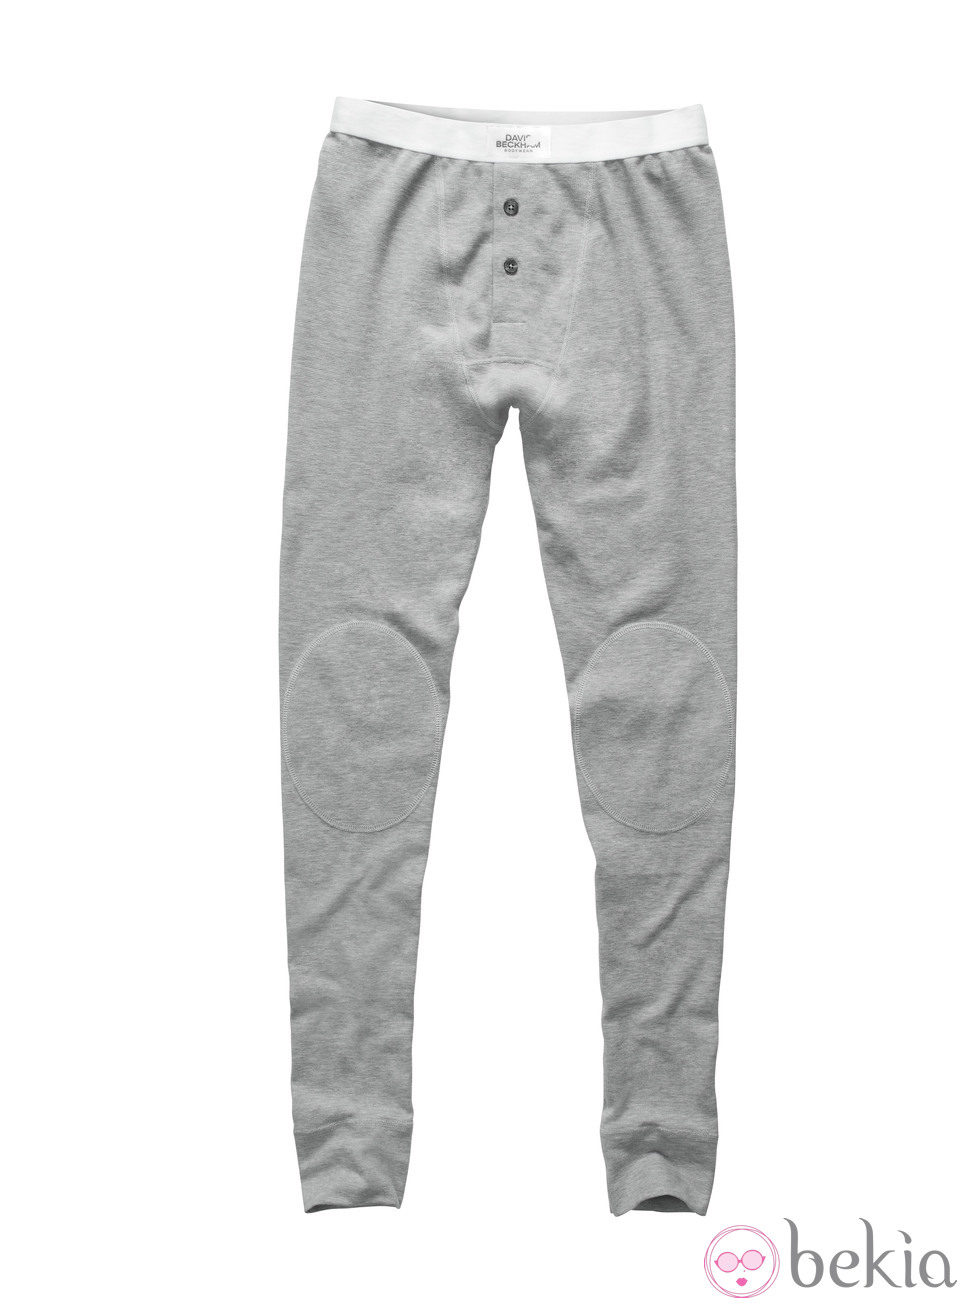 Pantalón de pijama ajustado de la colección de David Beckham para H&M